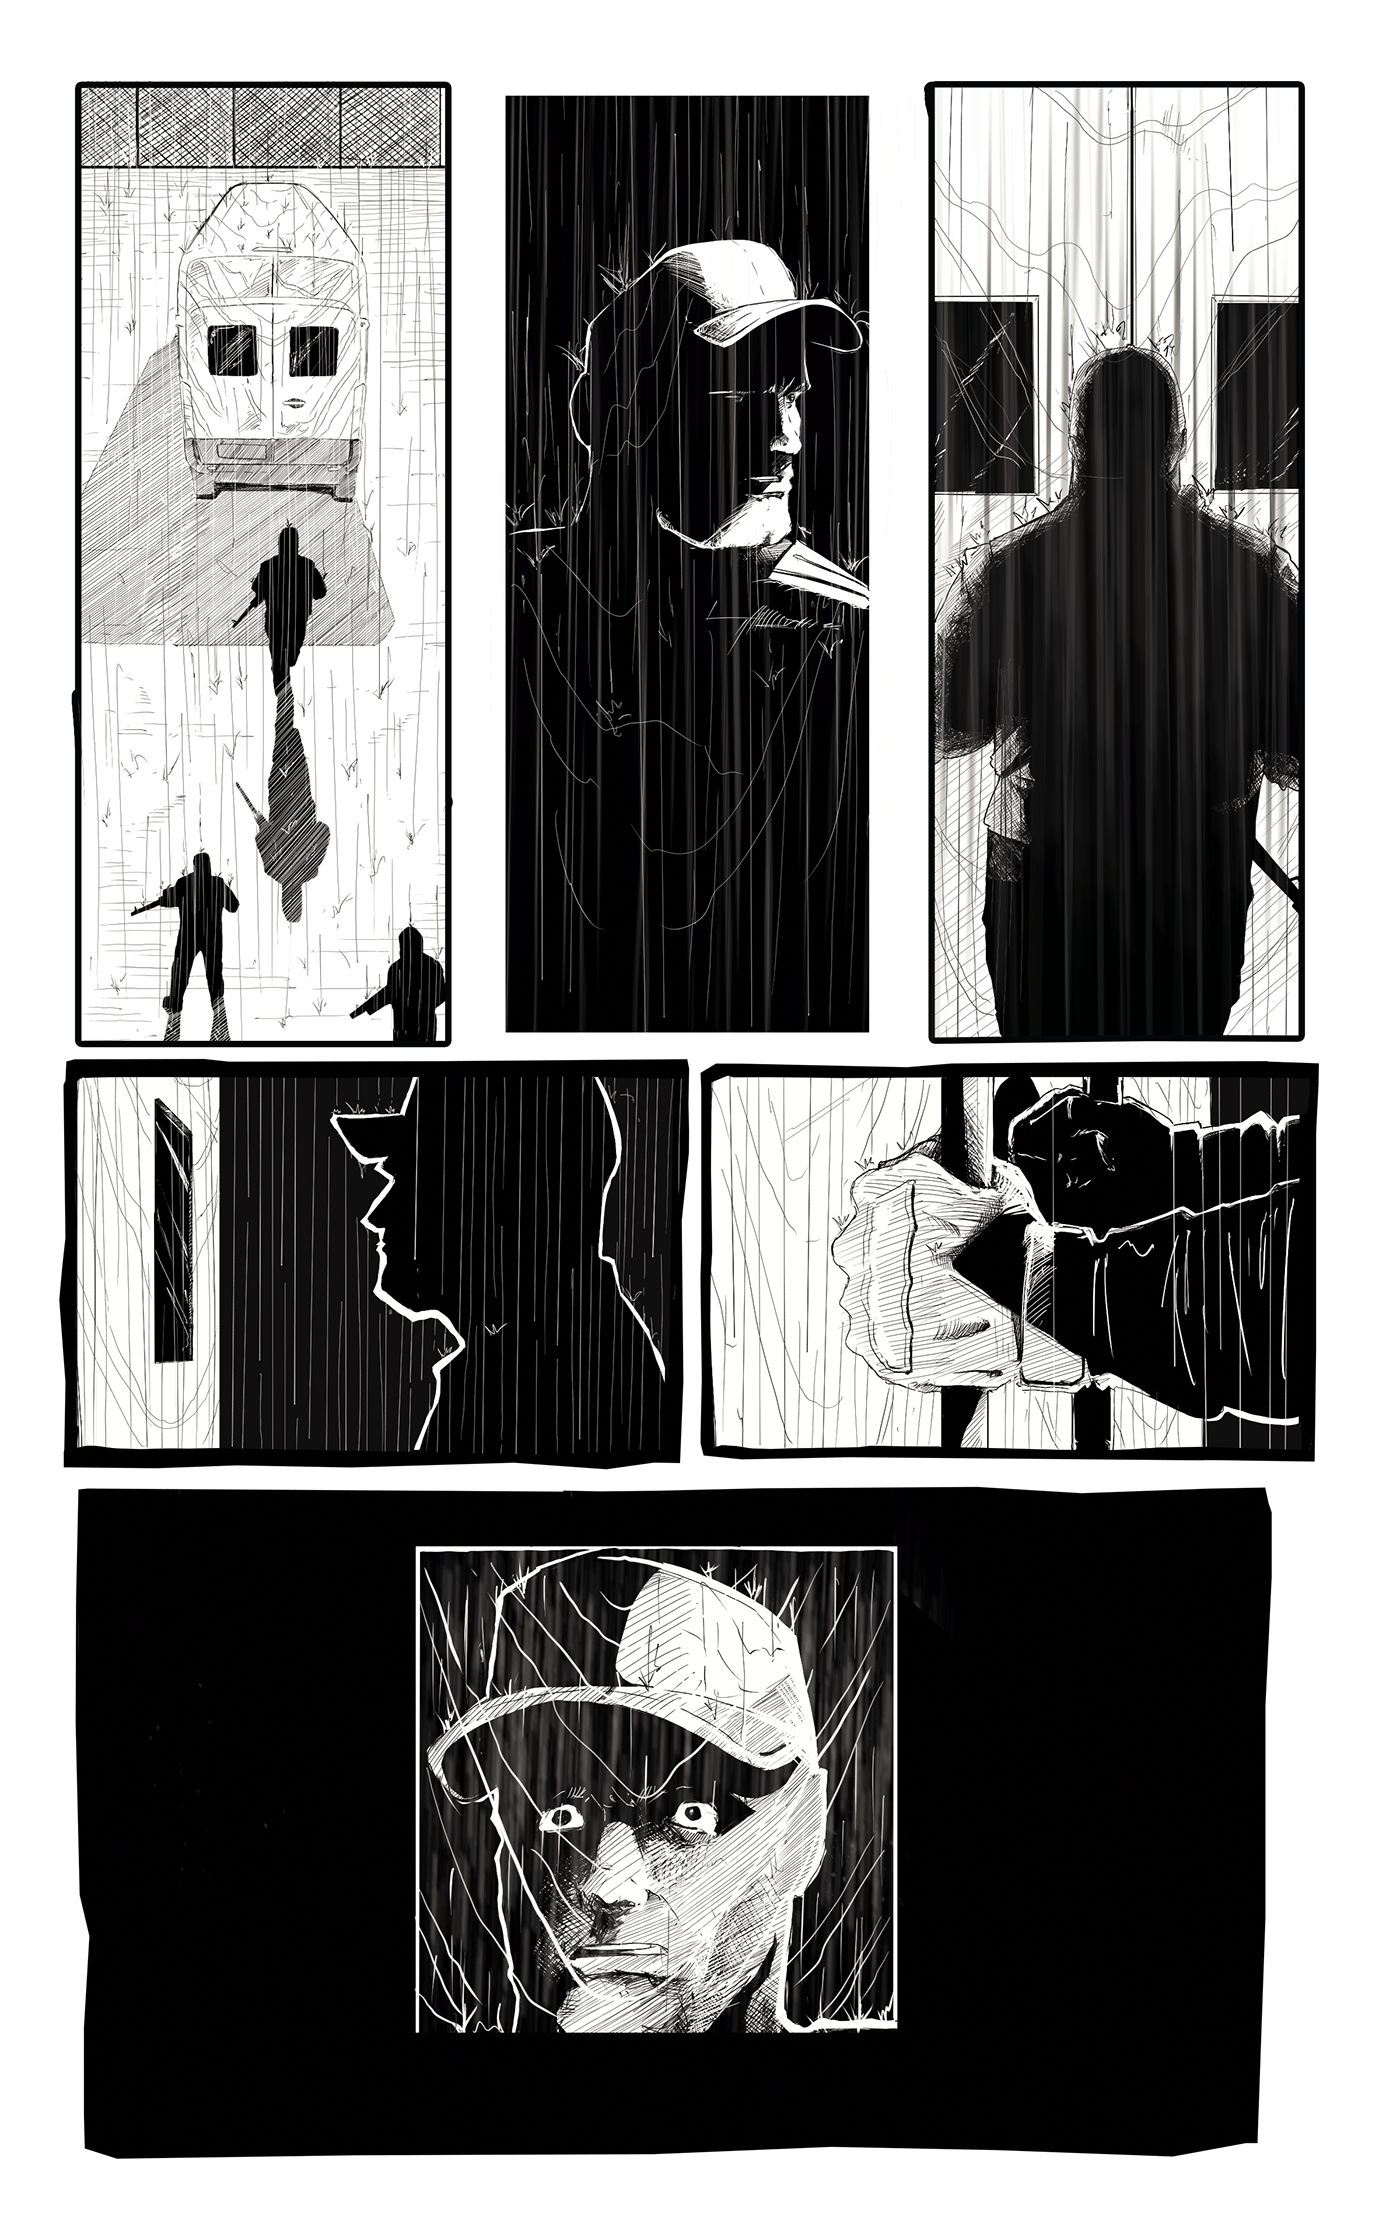 noir ink Film   dark storyboard sketch artwork digital illustration concept art black and white comics